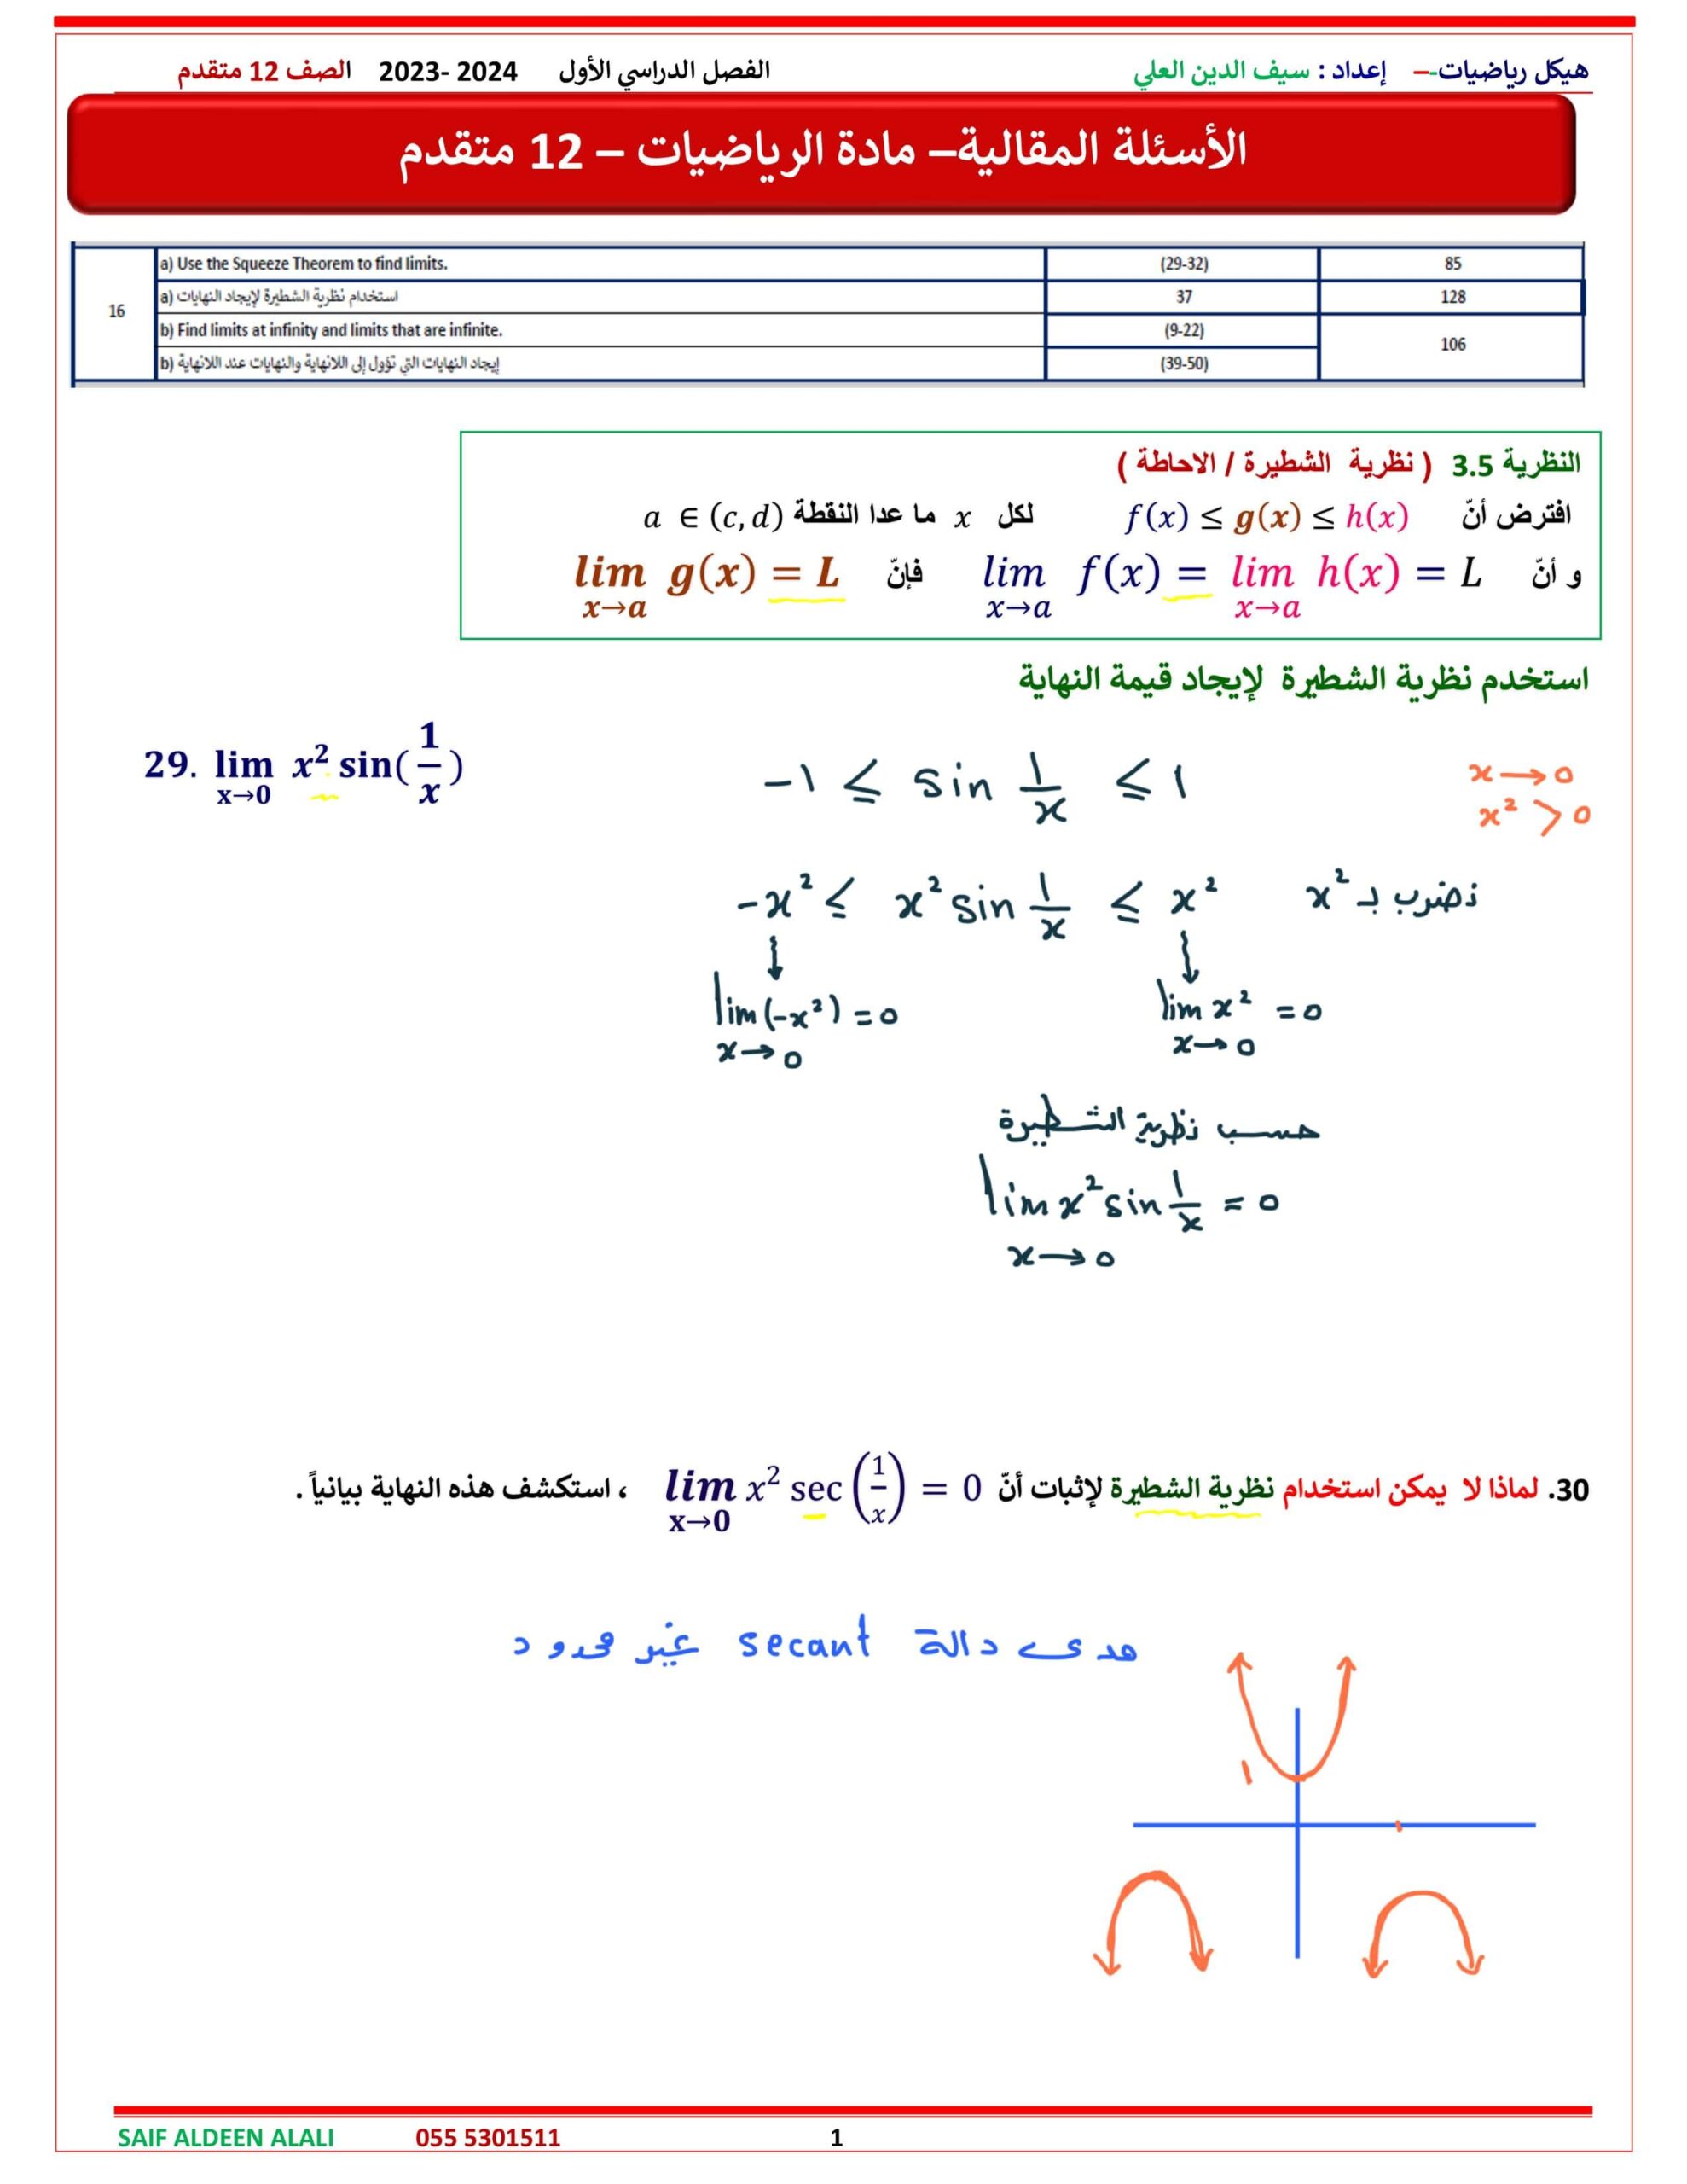 حل الأسئلة المقالية الجزء الورقي الرياضيات المتكاملة الصف الثاني عشر متقدم 